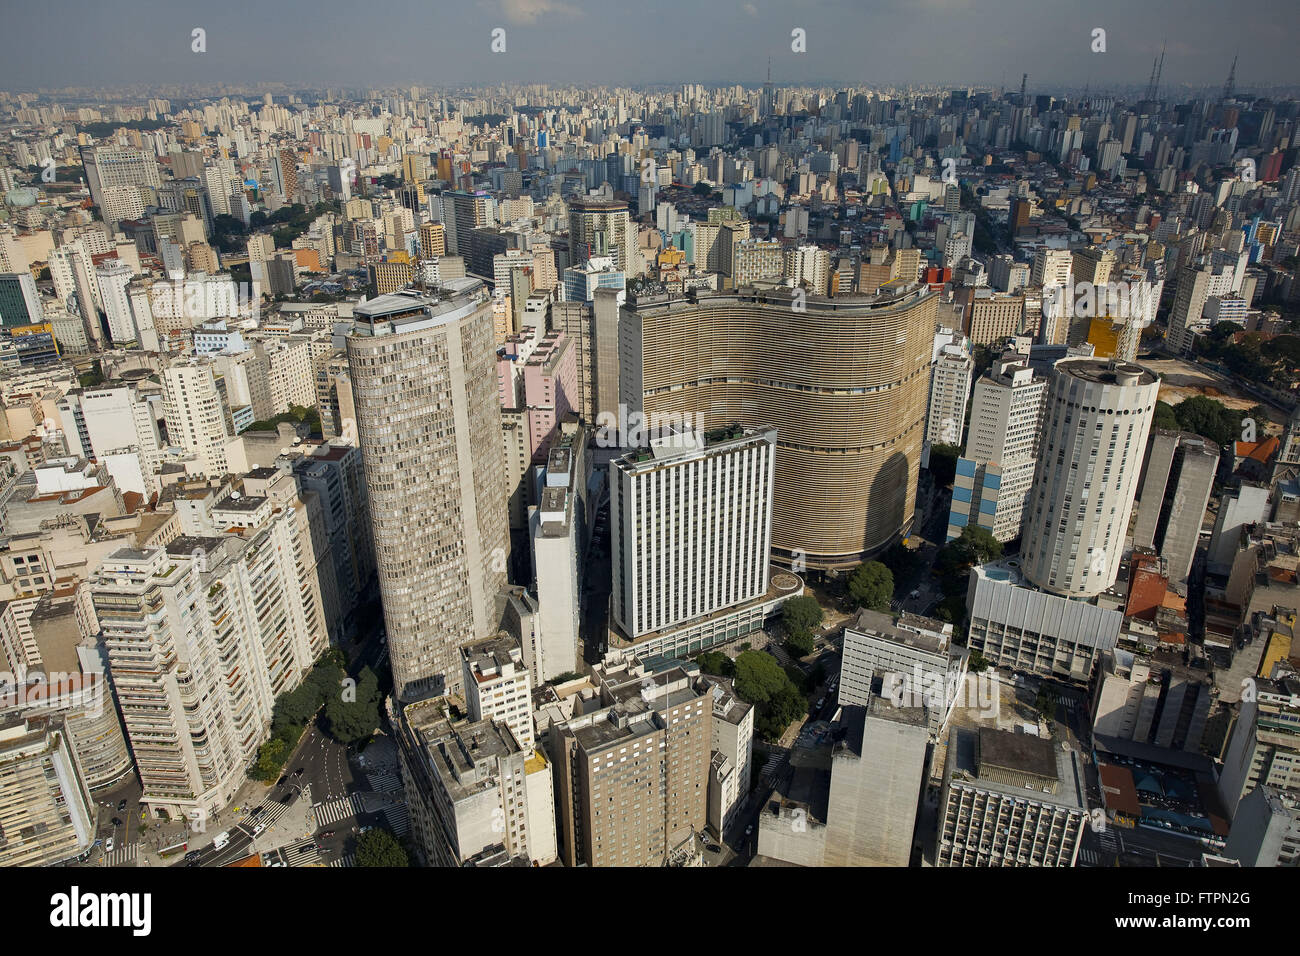 Aerial view of the central region of the city of Sao Paulo - Edificio Copan and Edificio Italia Stock Photo